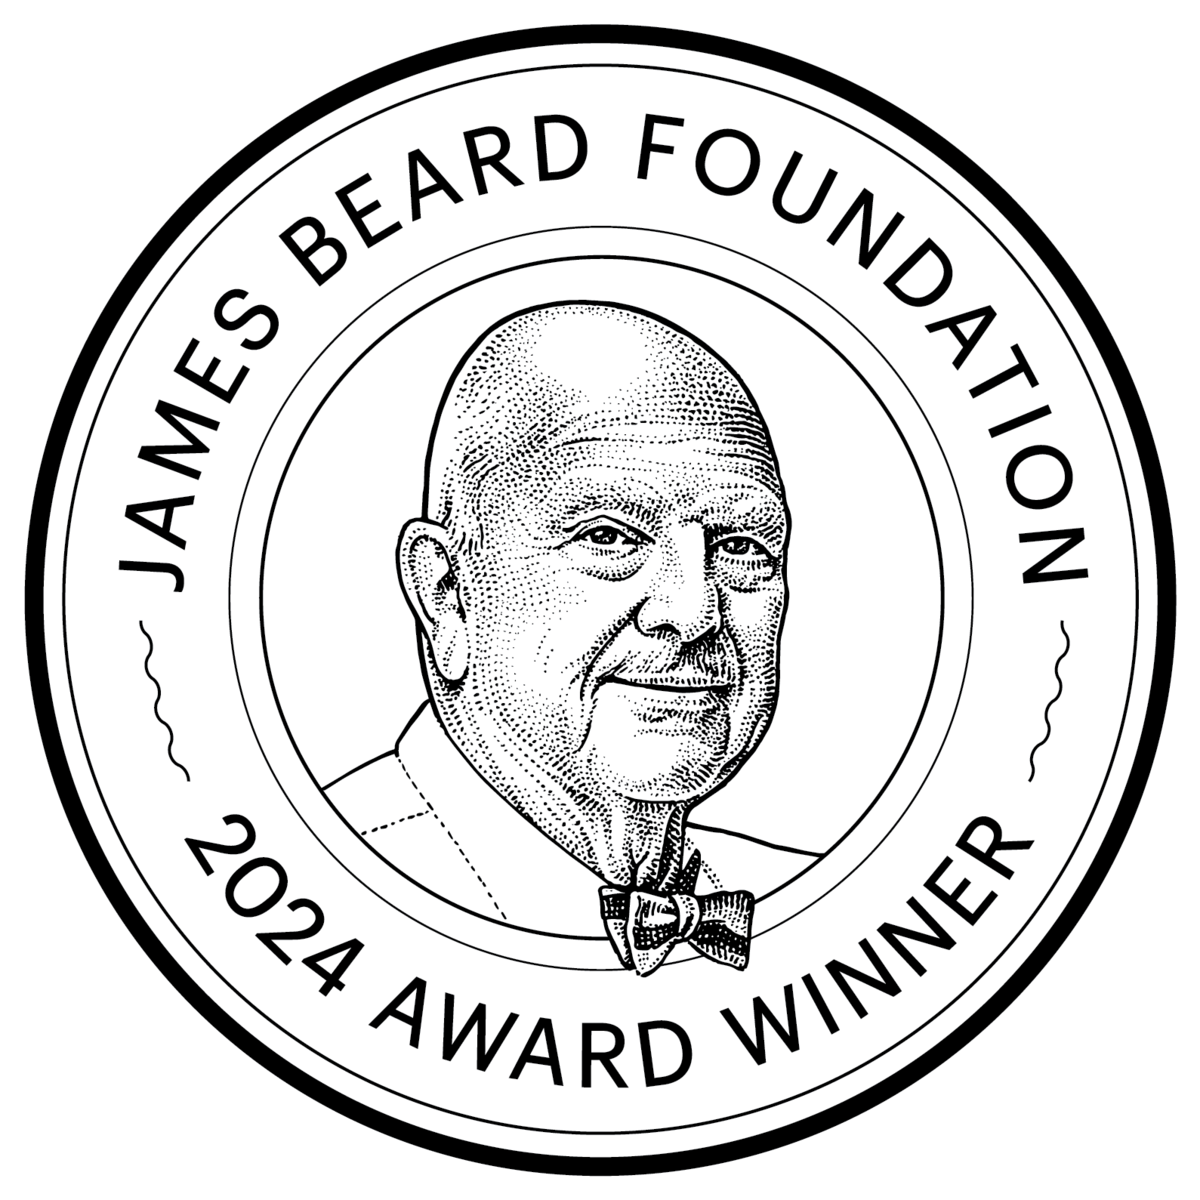 History - James Beard Award